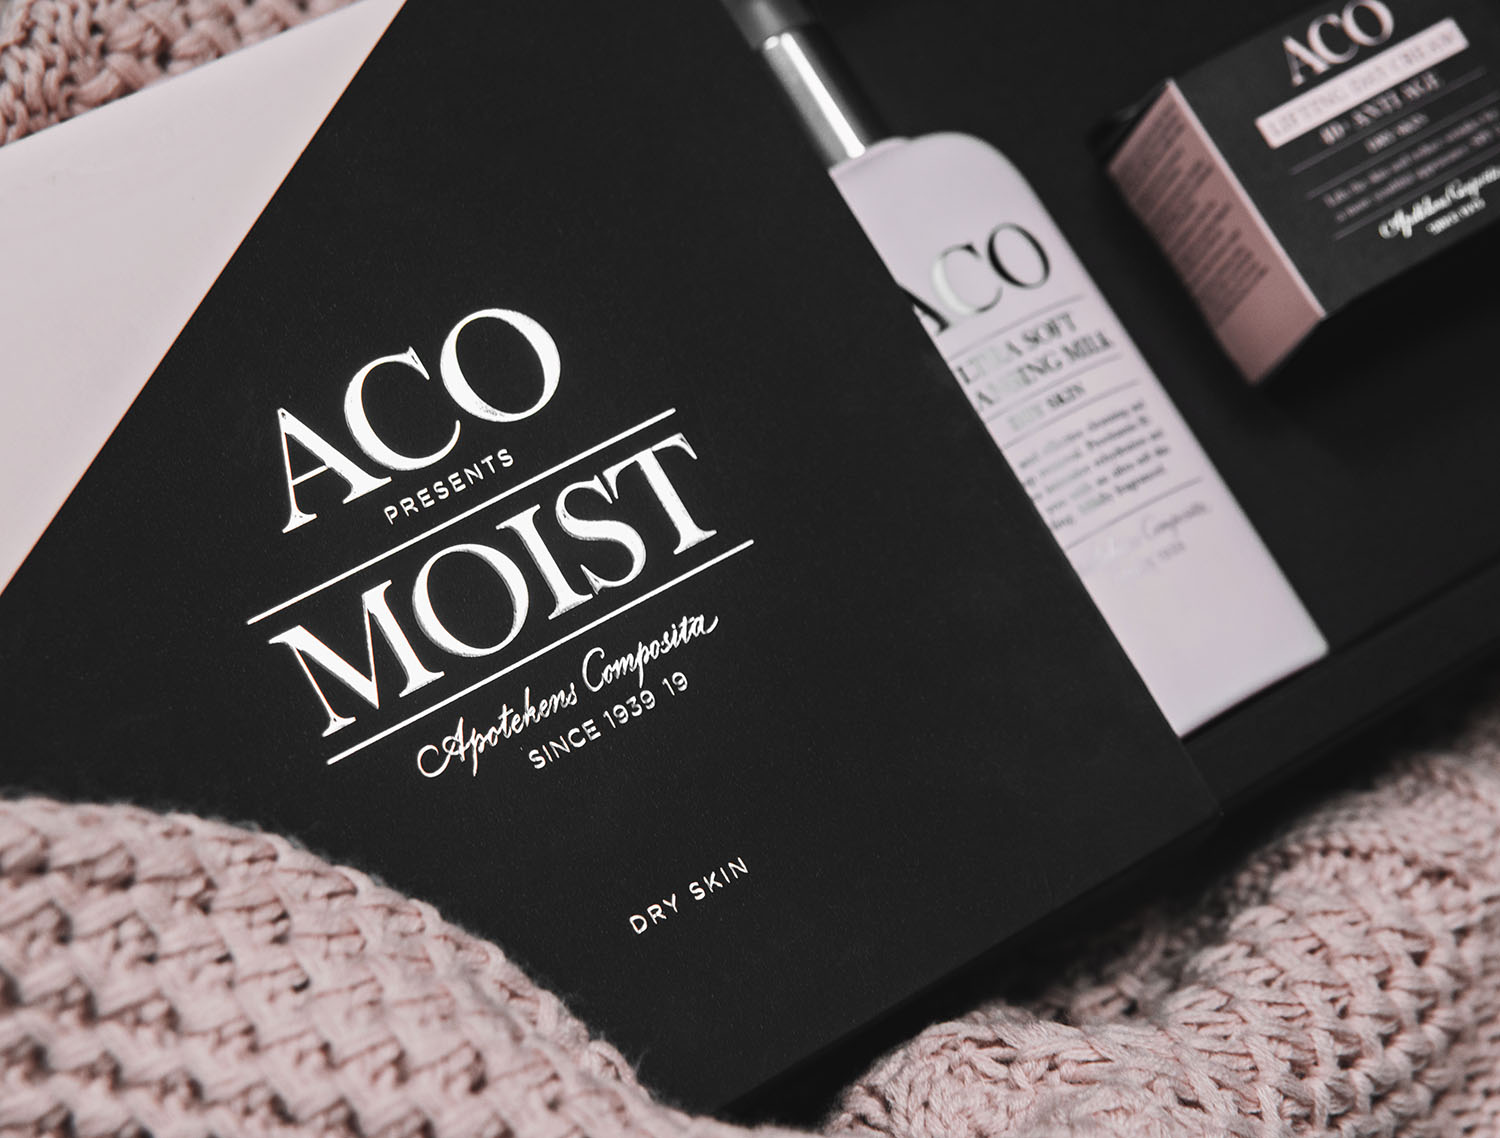 Aco Moist Dry Skin